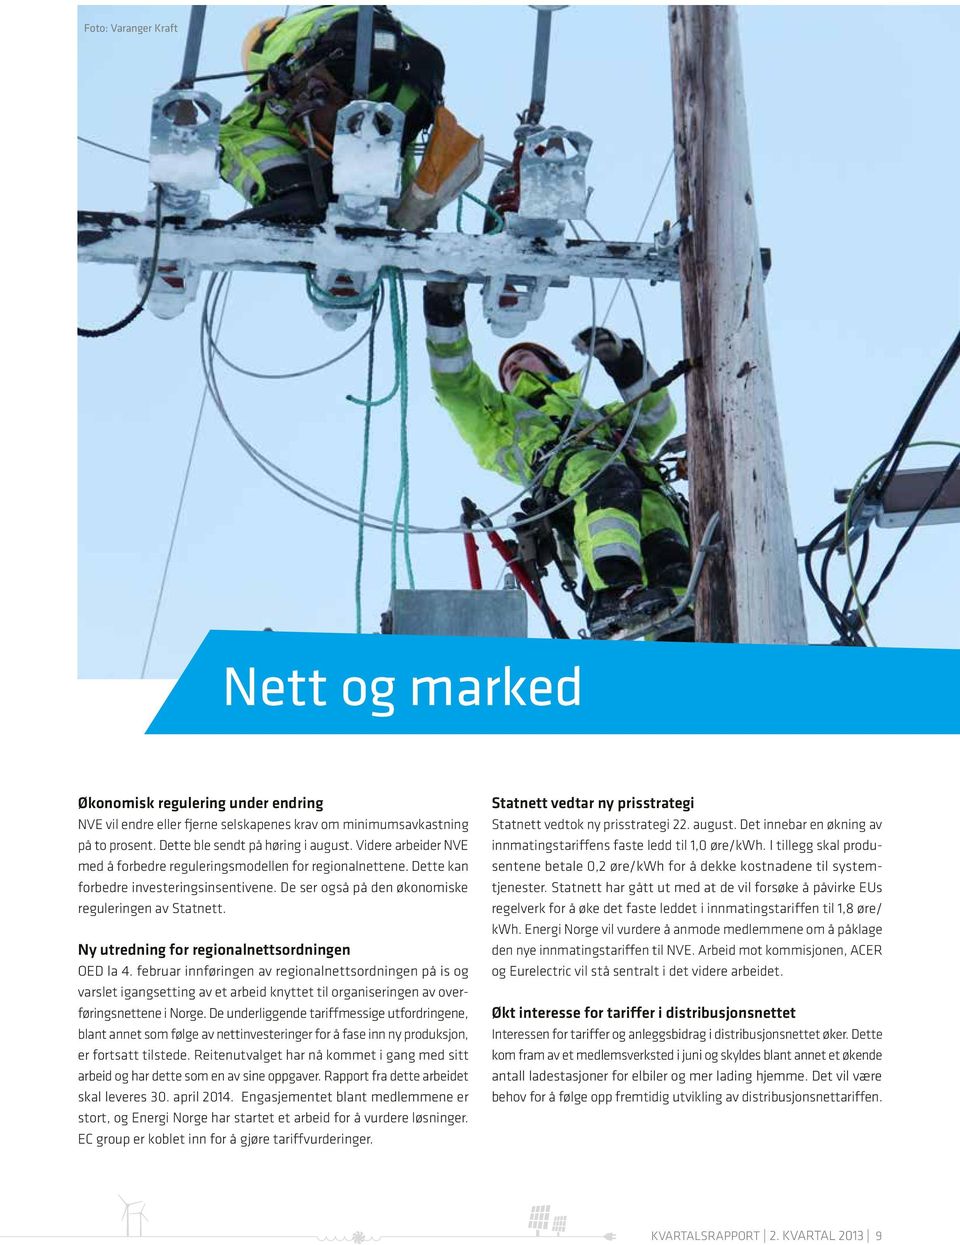 Ny utredning for regionalnettsordningen OED la 4. februar innføringen av regionalnettsordningen på is og varslet igangsetting av et arbeid knyttet til organiseringen av overføringsnettene i Norge.